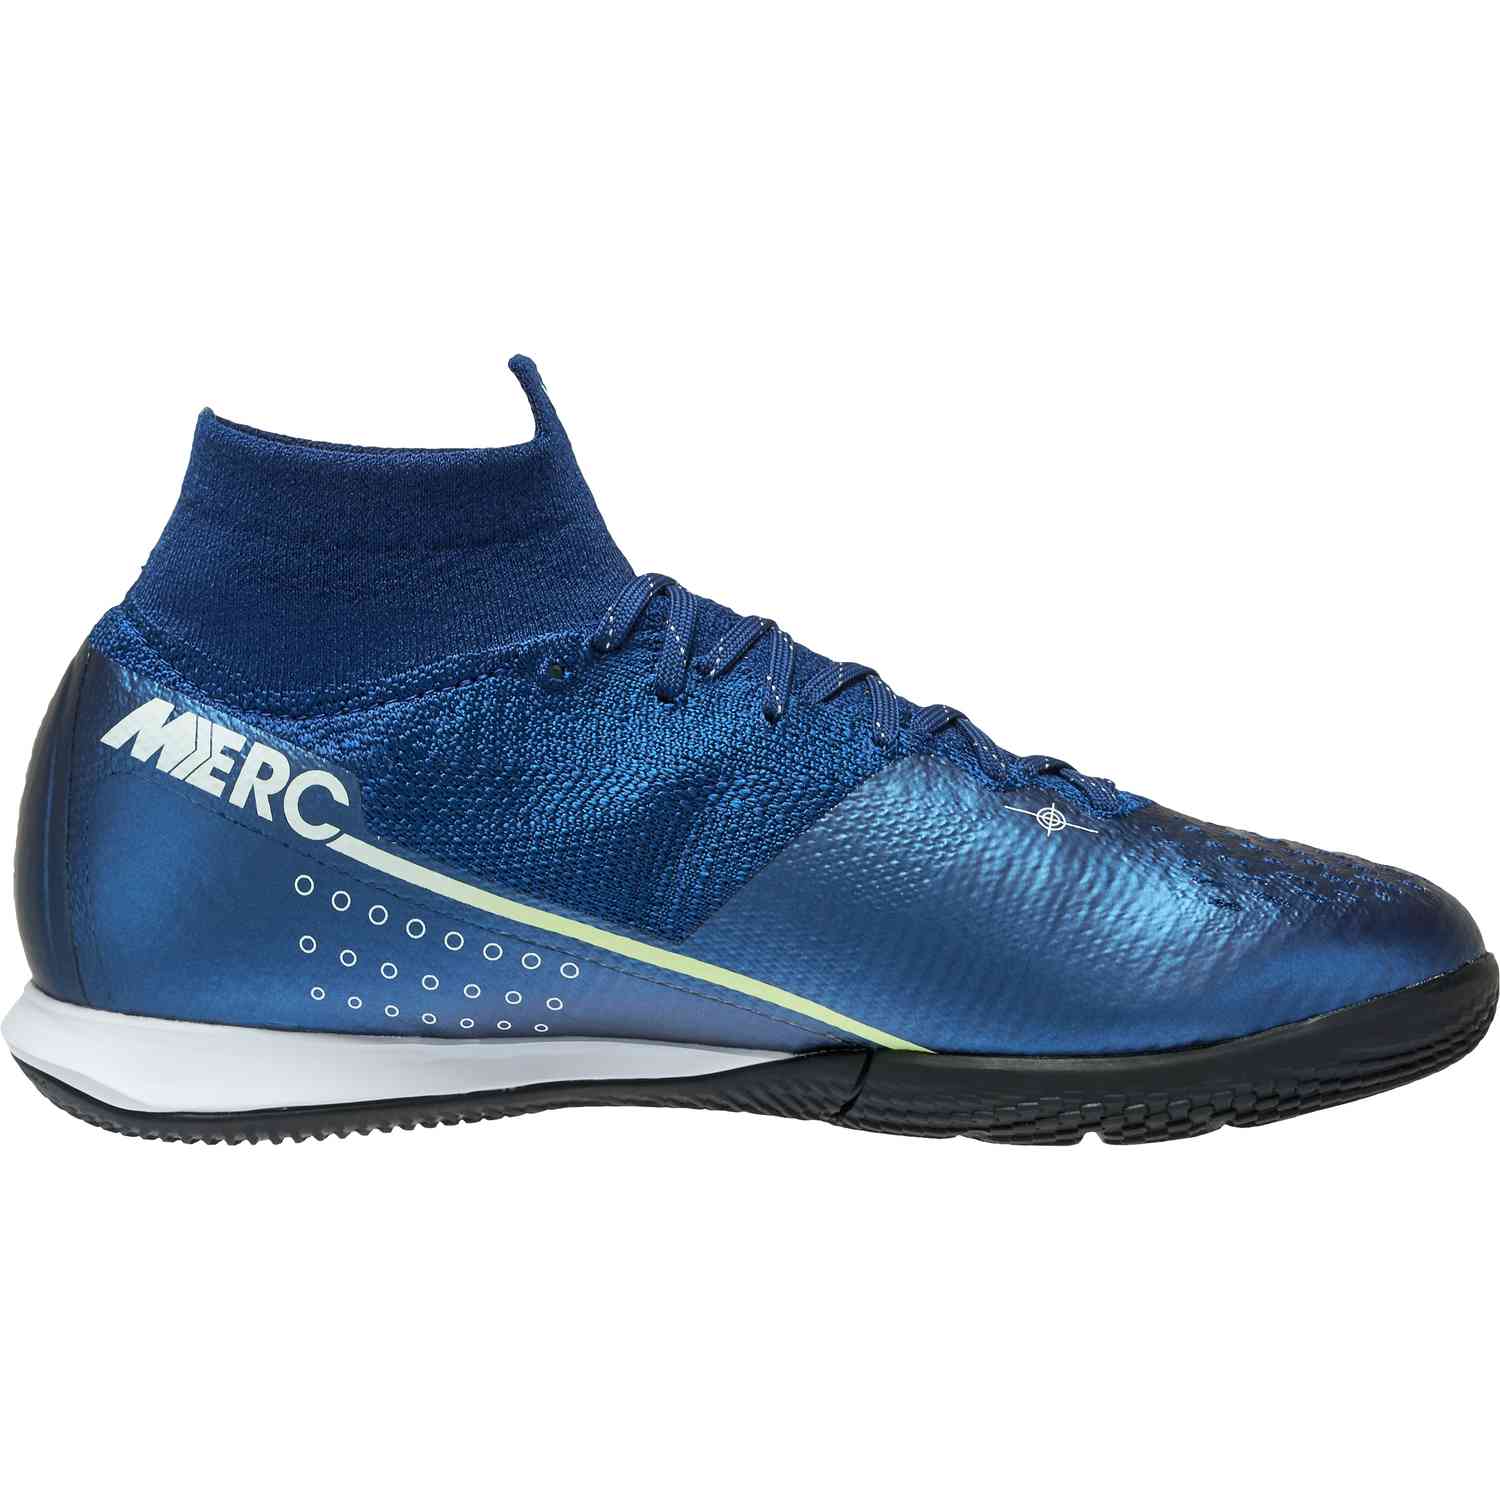 Nike Mercurial Superfly 7 Elite IC - Dream Speed - SoccerPro